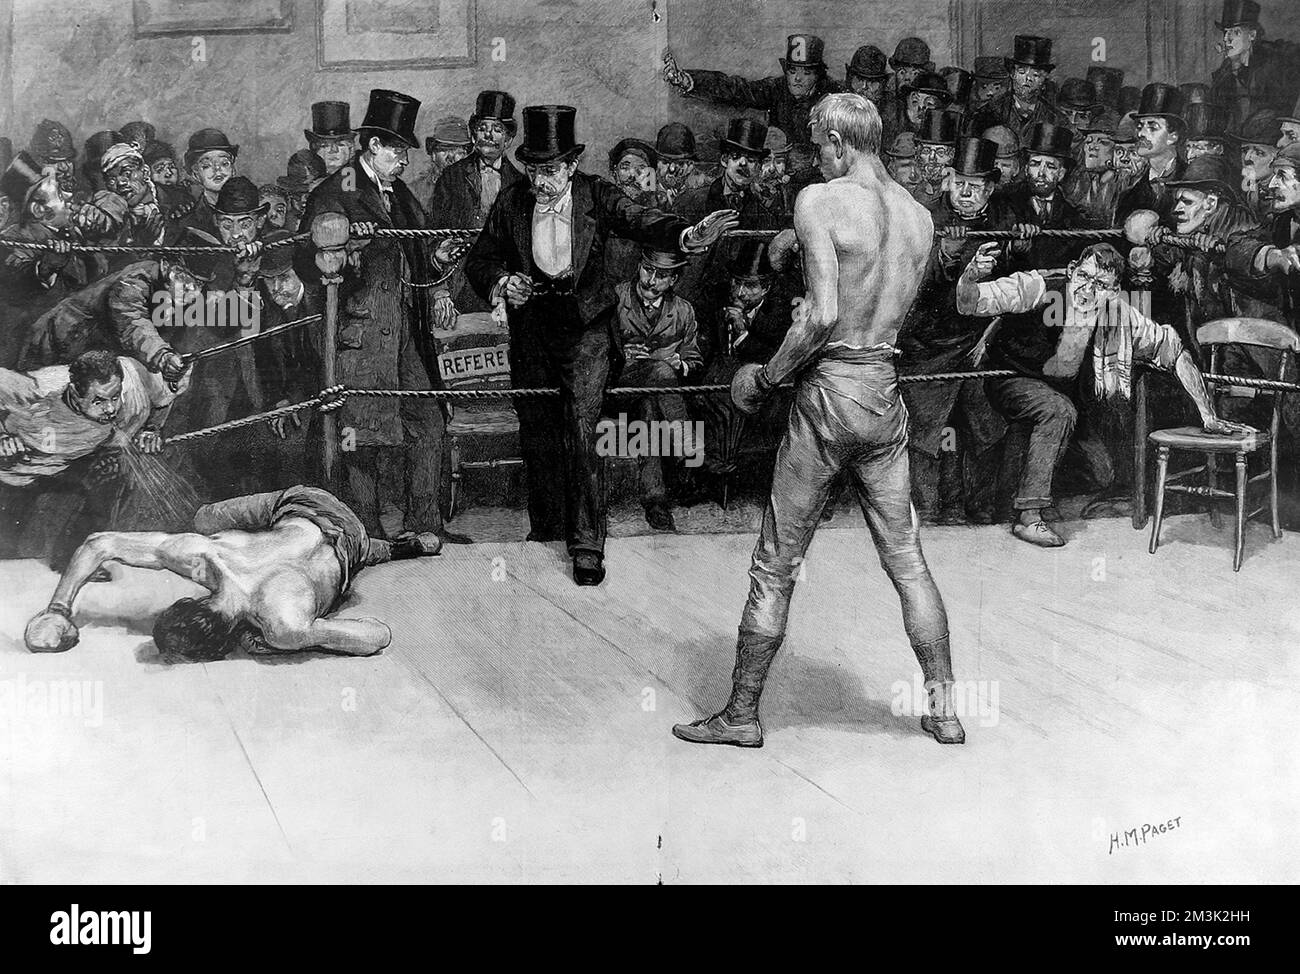 Das Ende eines Boxkampfes. Auf der linken Seite liegt der besiegte Boxer auf dem Boden, während der Schiedsrichter mit Zylinder den Ring betritt, um das Ende des Spiels zu markieren. Stockfoto